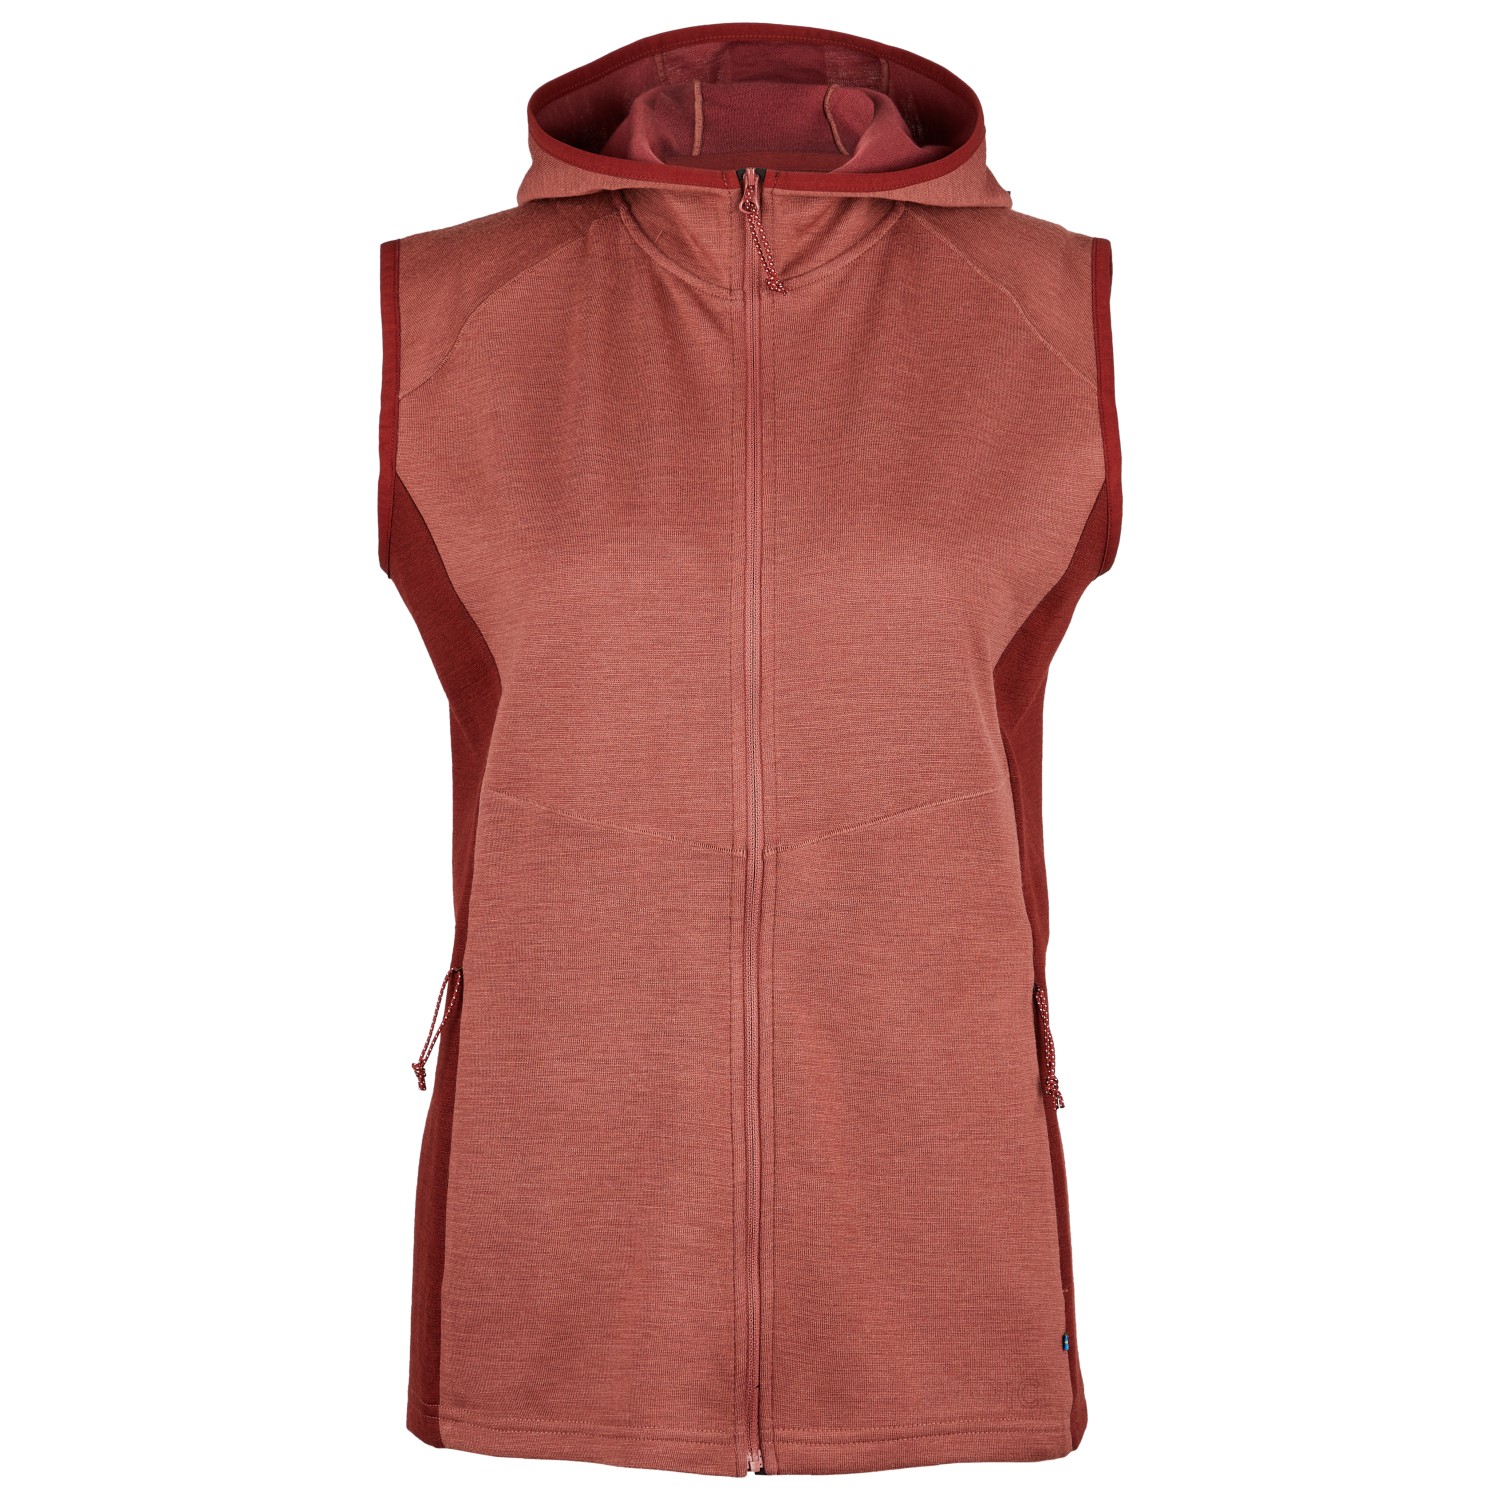 Жилет из мериноса Stoic Women's Merino260 StadjanSt Vest, цвет Wild Berry/Rust жилет фотографа wild 200 бежевый размер s